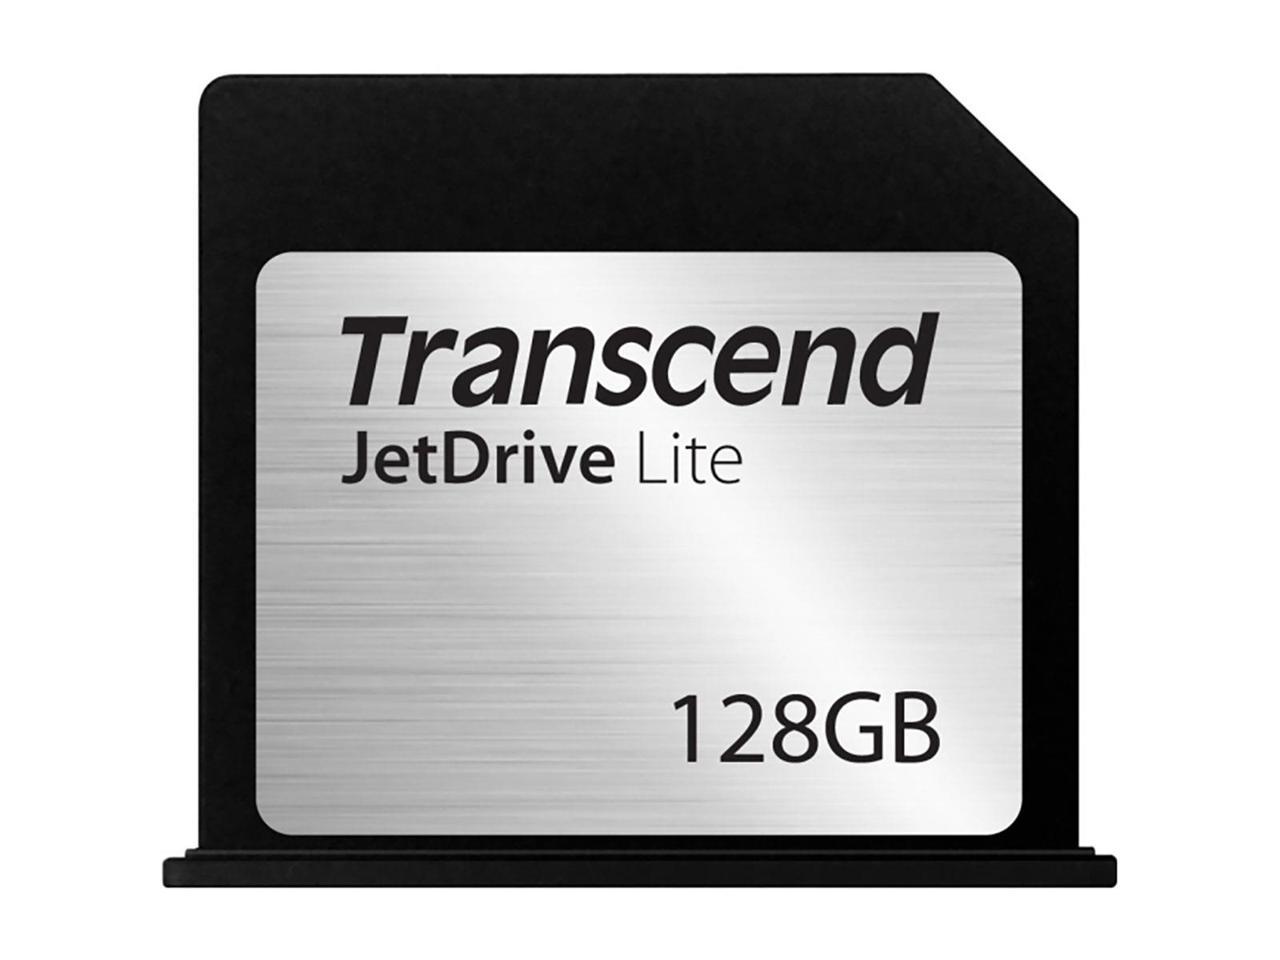 Transcend - TS128GJDL130 - Transcend 130 128 GB JetDrive Lite - 95 MB/s Read - 60 MB/s Write - 1 Card